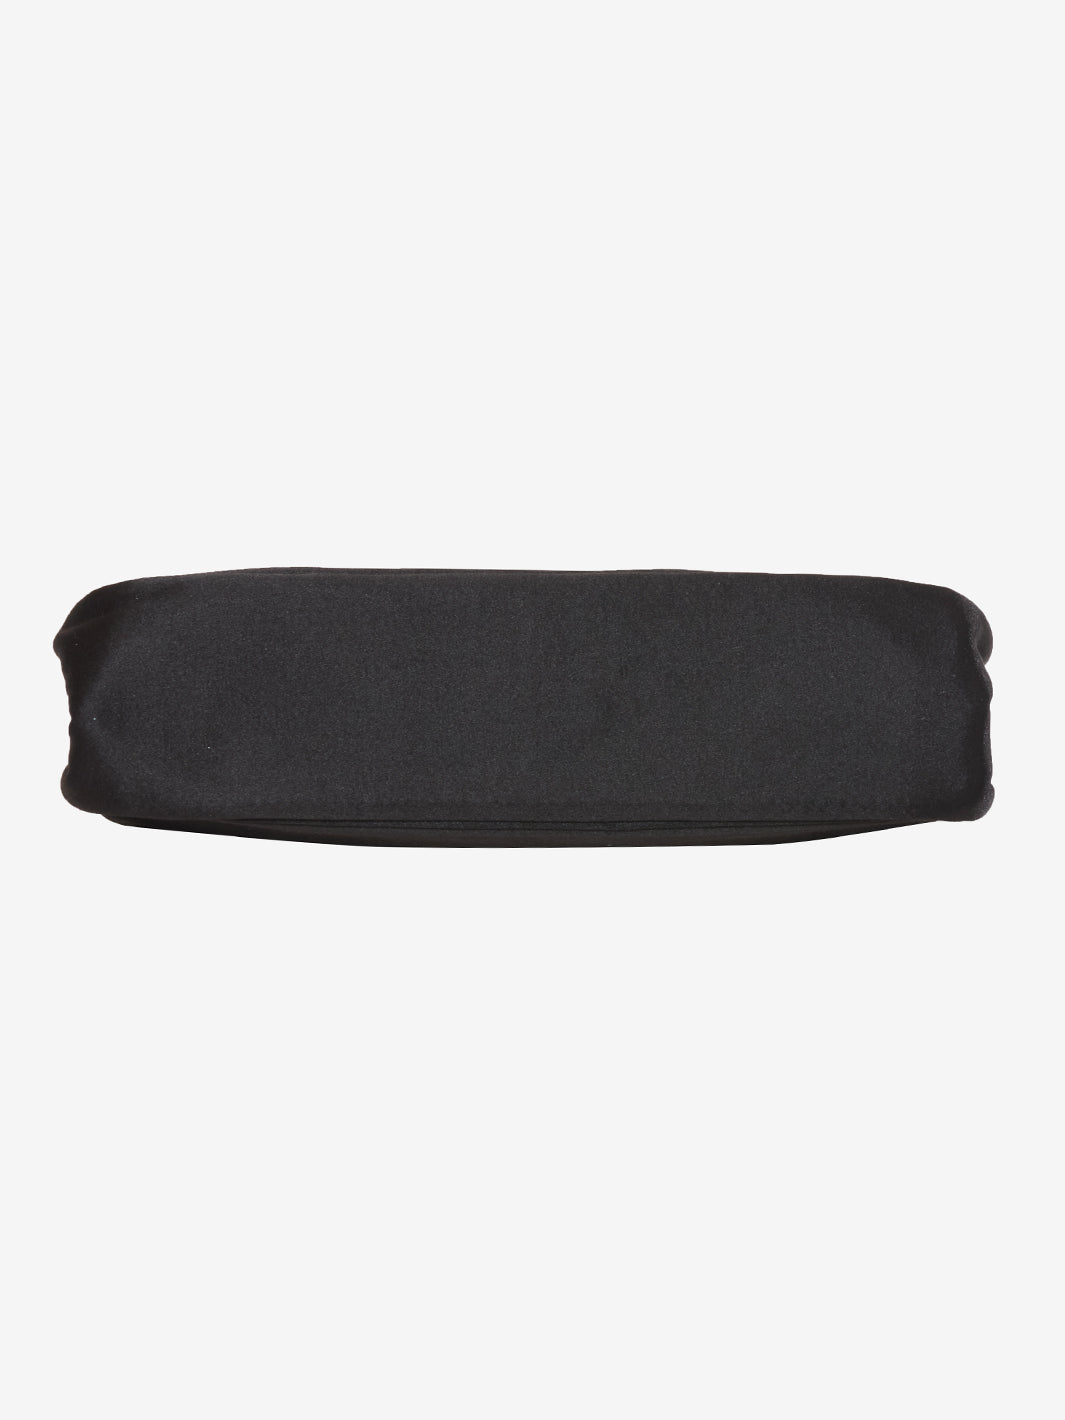 Shoulder bag in black satin